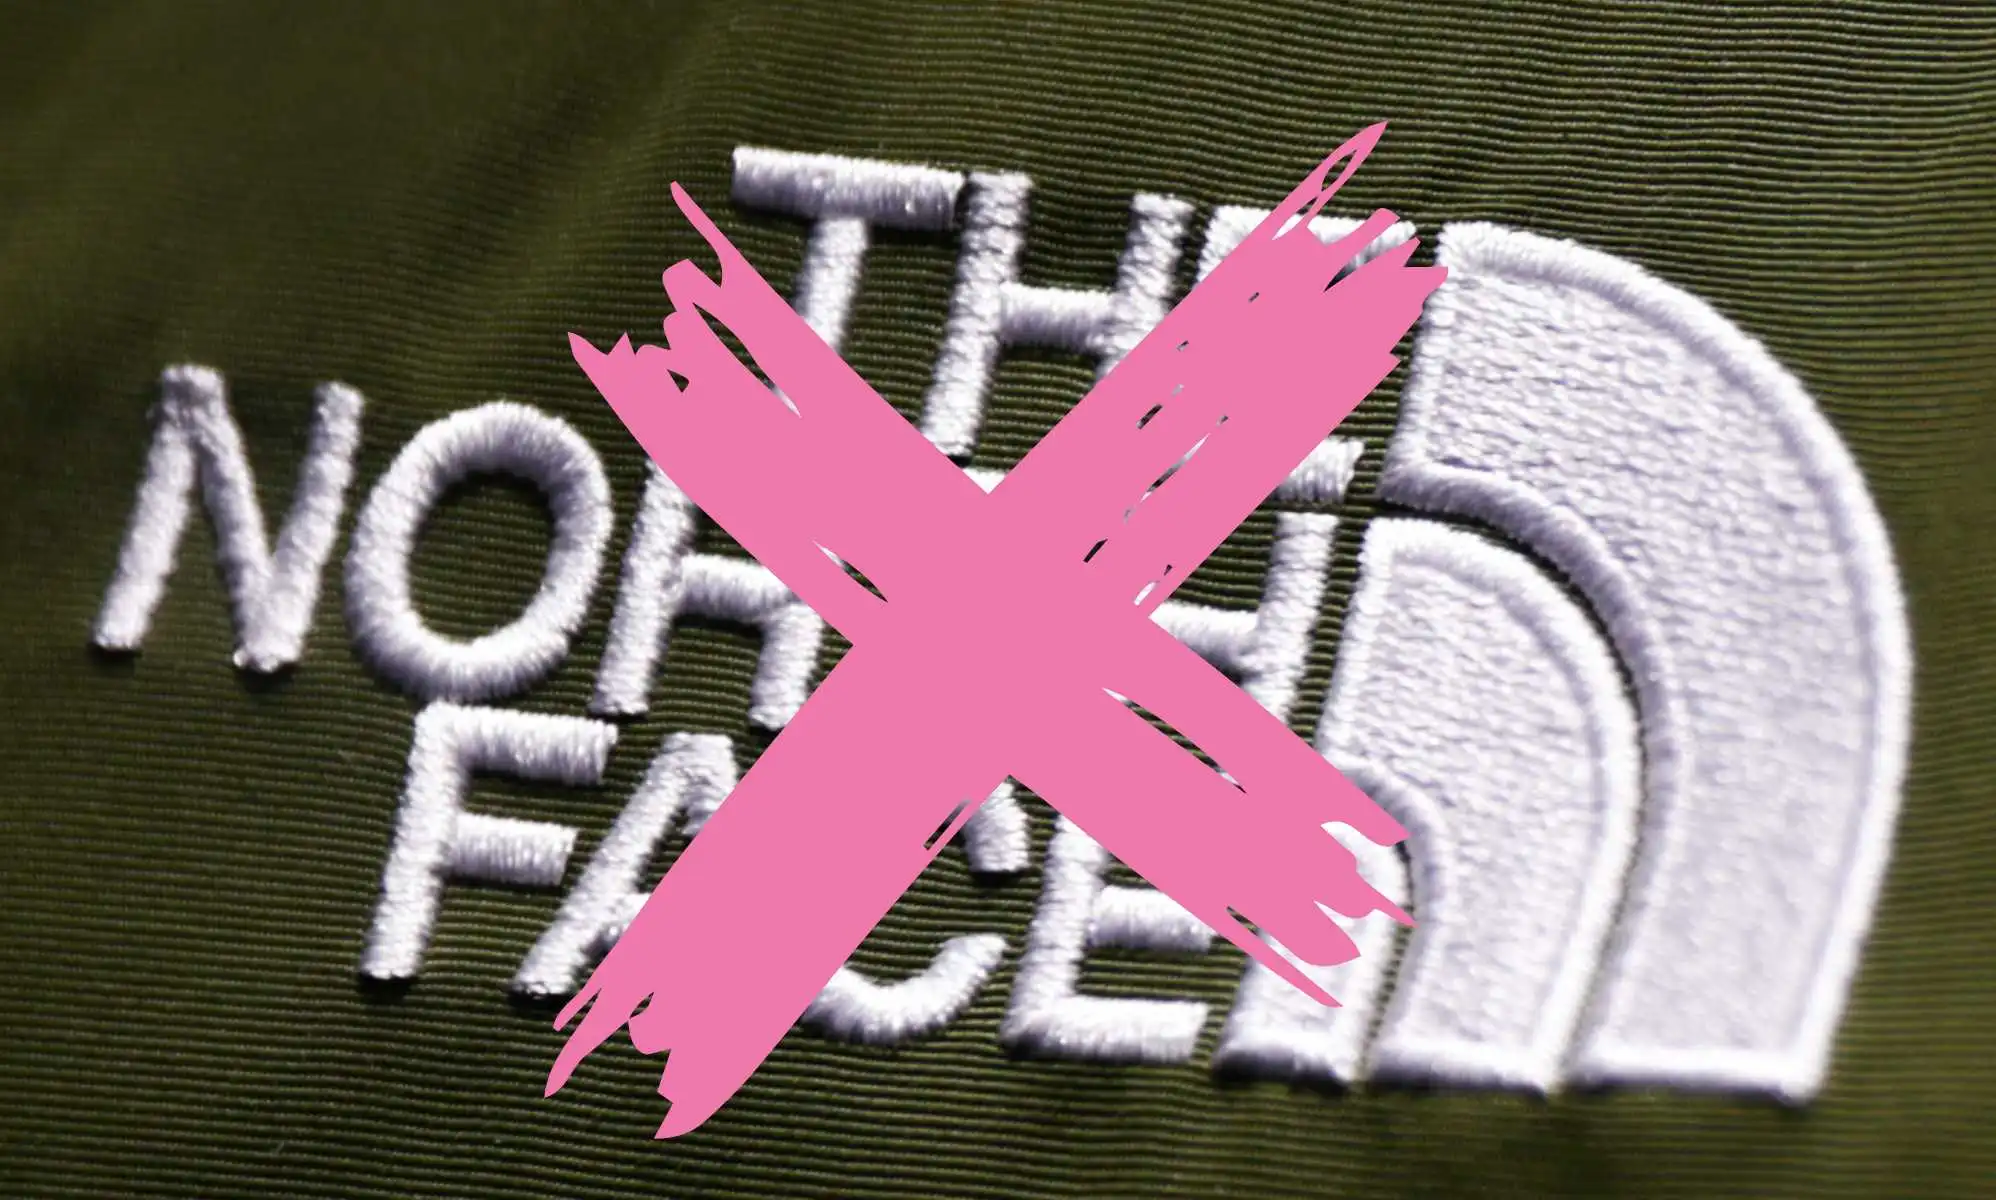 The North Face se enfrenta a llamamientos al boicot por su apoyo a los campamentos de verano LGBTQ+